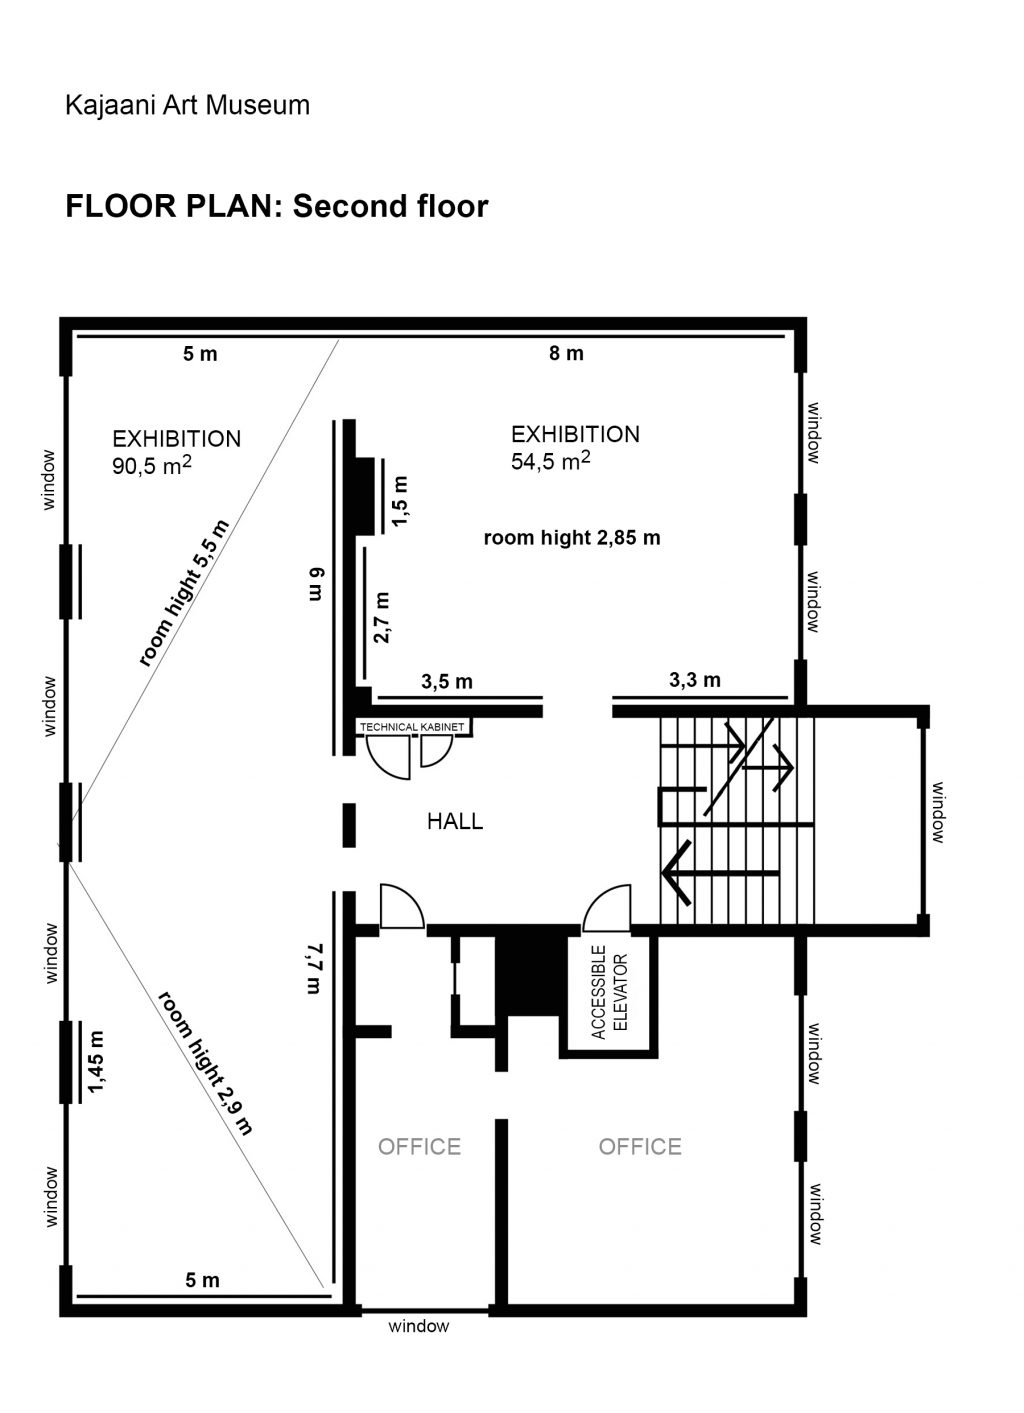 The floor plan of the second floor